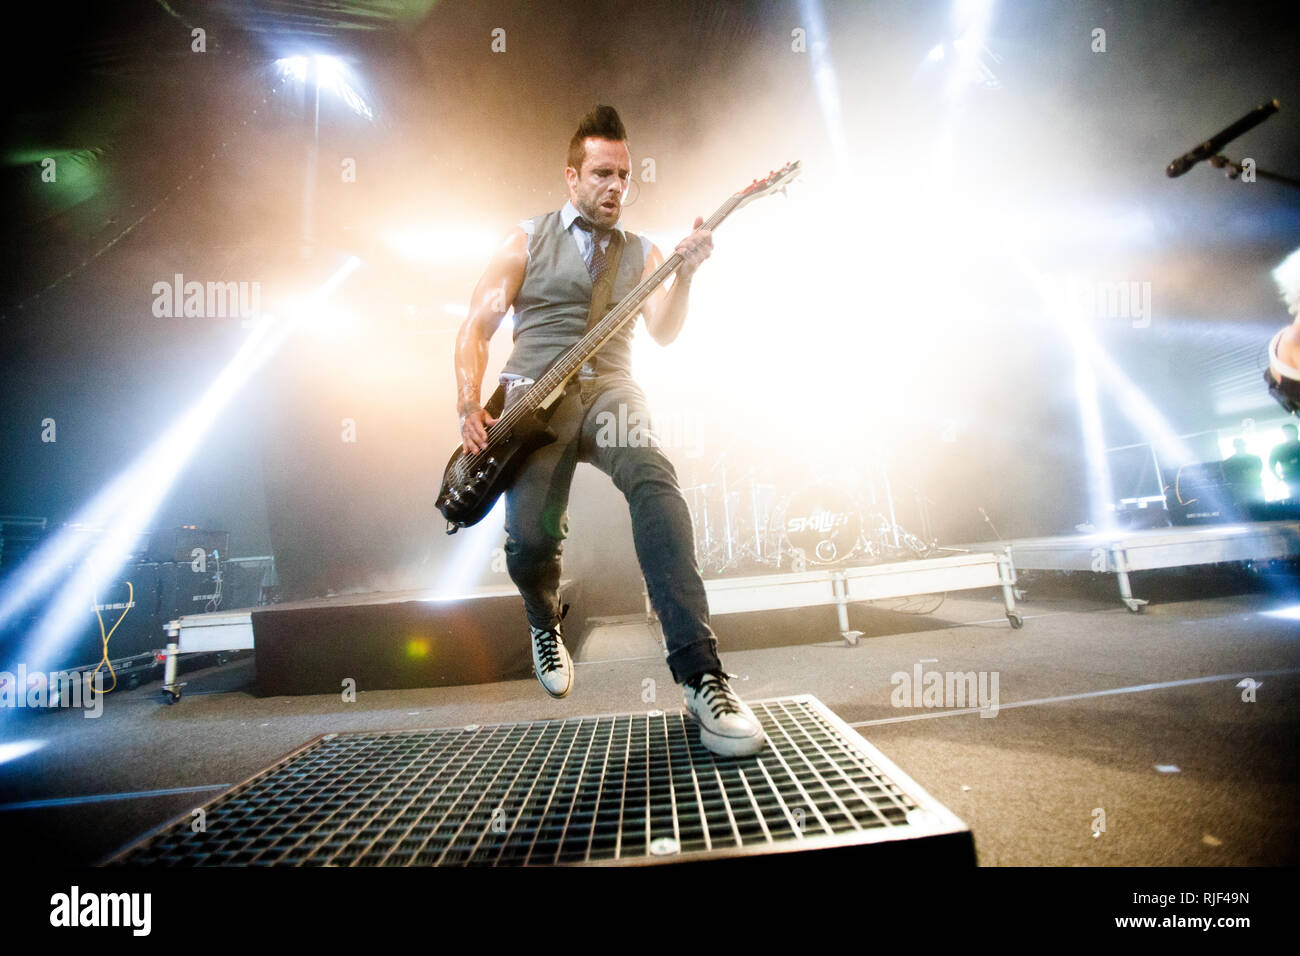 Le groupe de rock chrétien américain Skillet effectue un concert live au  festival de musique danois Jelling Festival 2014. Ici bassiste et chanteur John  Cooper est vu sur scène. Le Danemark, 30/05